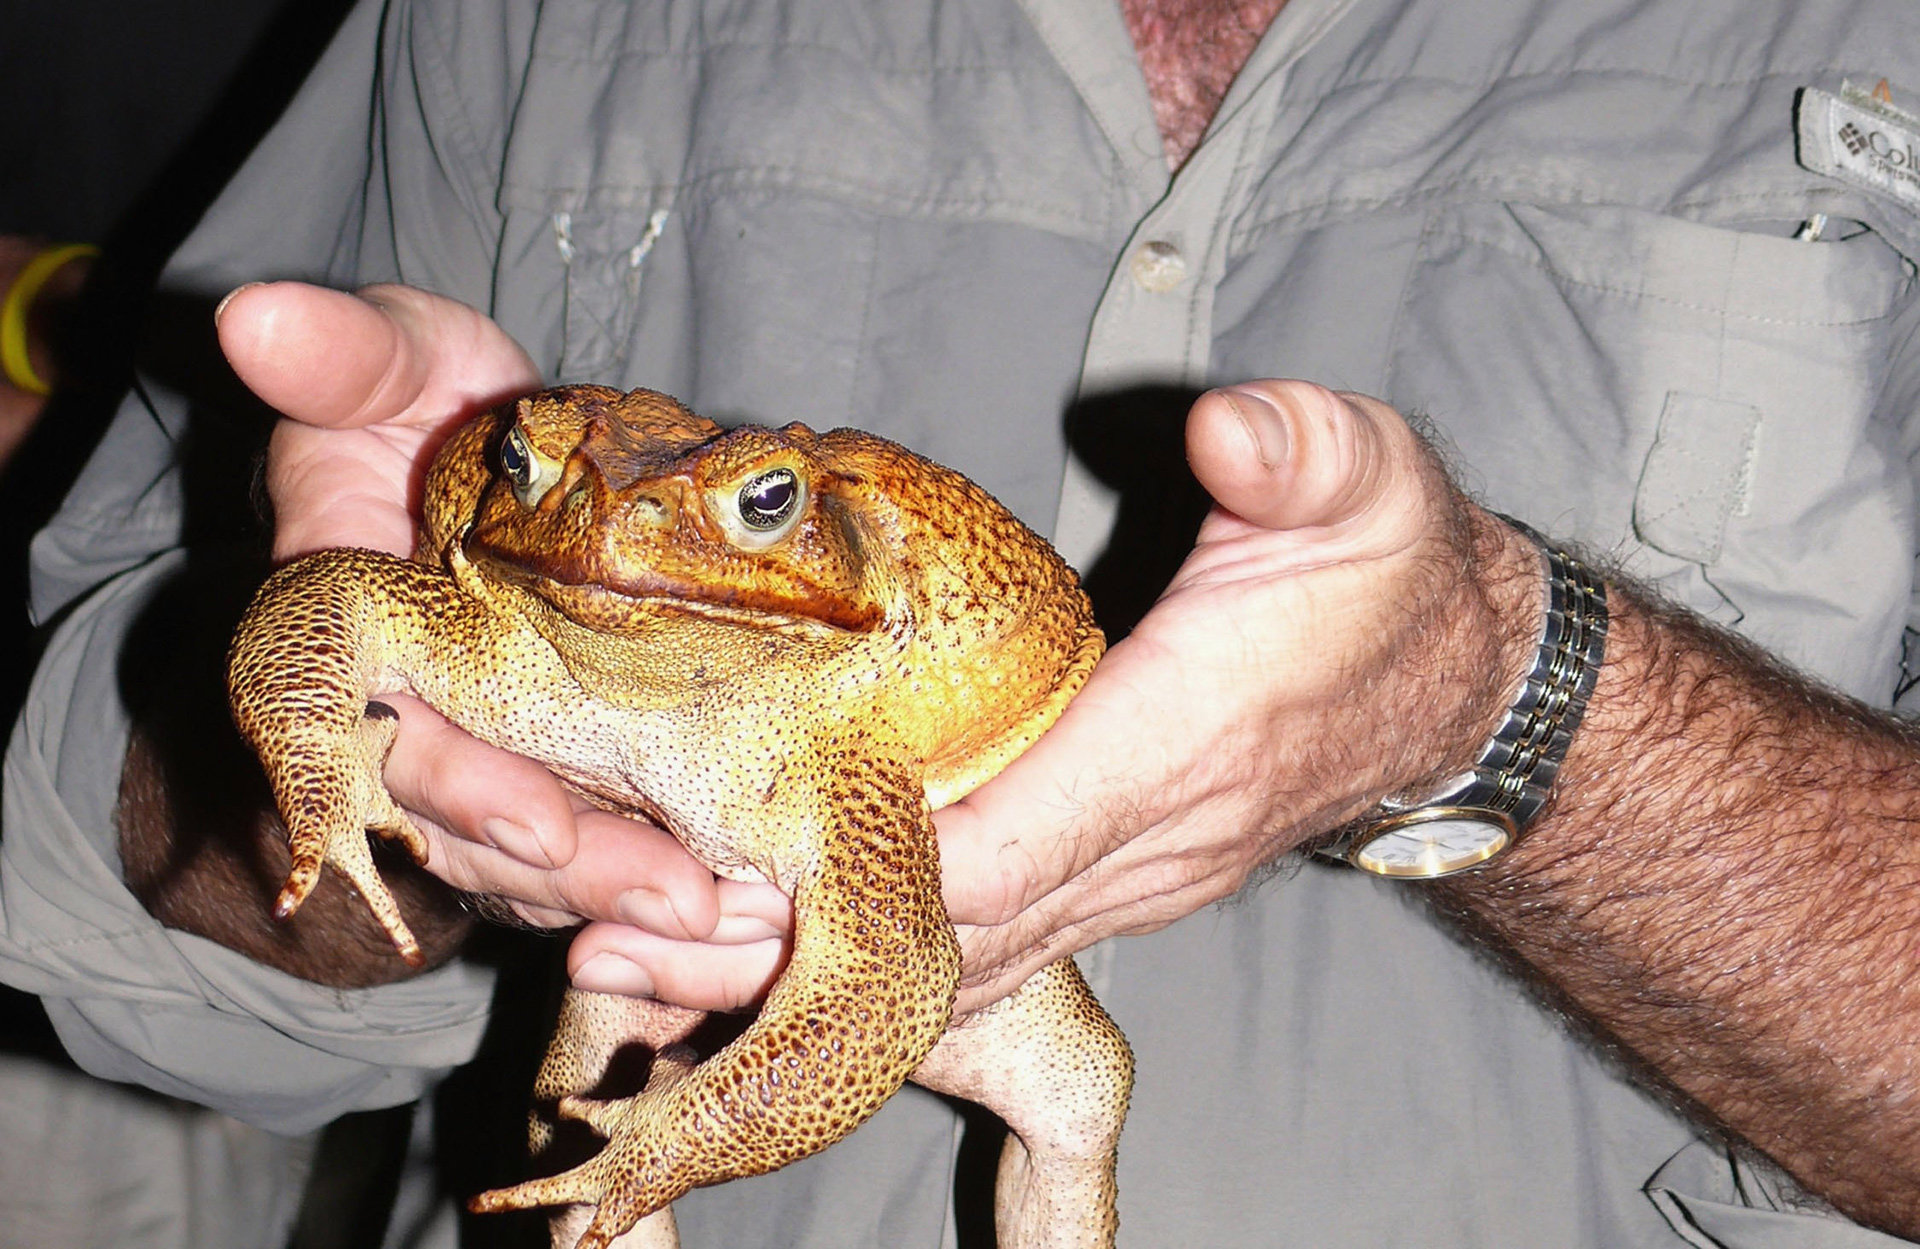 Kein Herz für Tiere: Der Aga-Kröte sind die Naturschützer in Australien ganz schön ans Leder gegangen